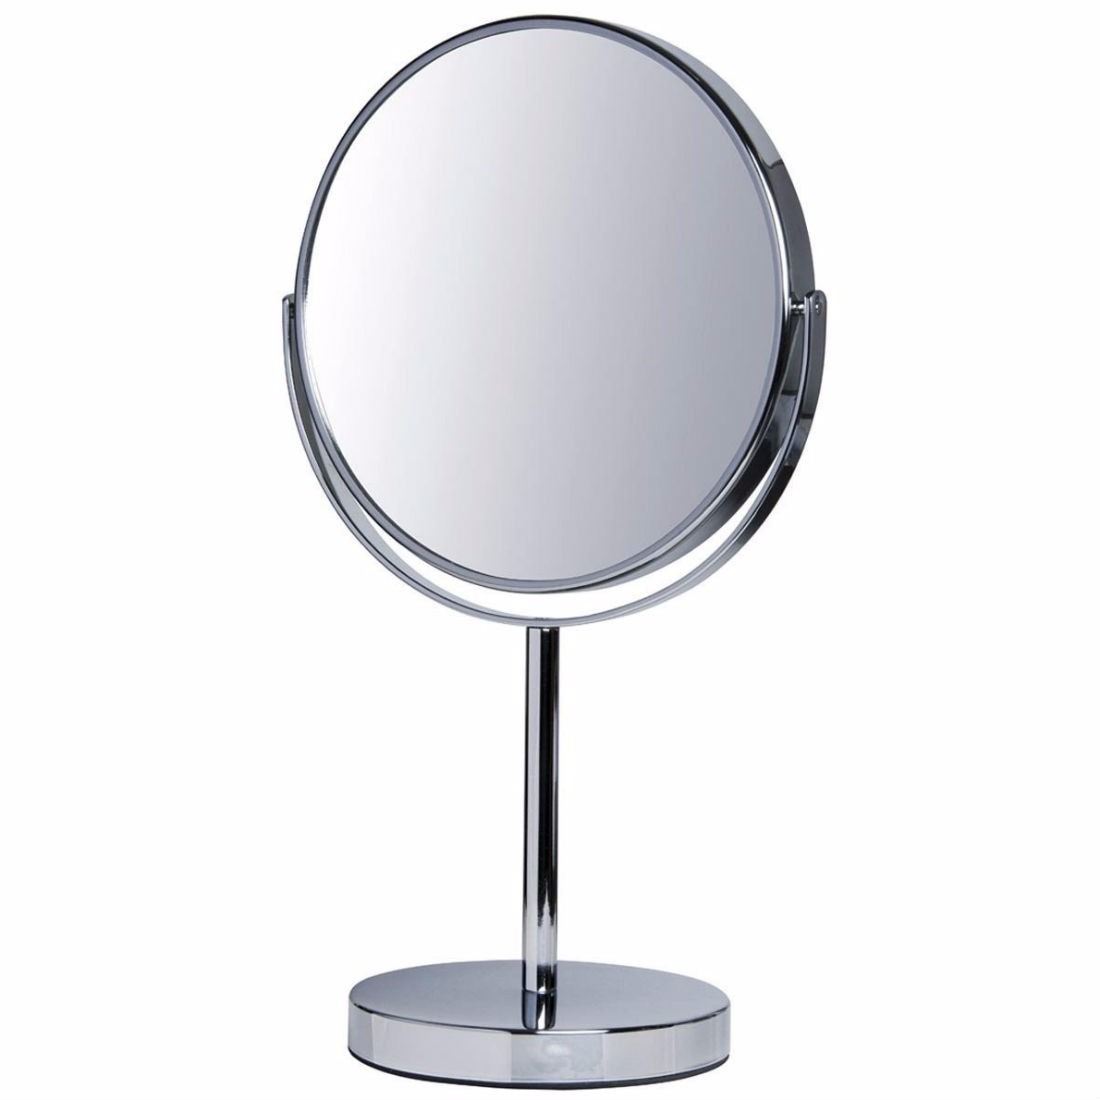 Espelho Para Maquiagem De Mesa Grande Dupla Face 5x Aumento R 111 90 Em Mercado Livre